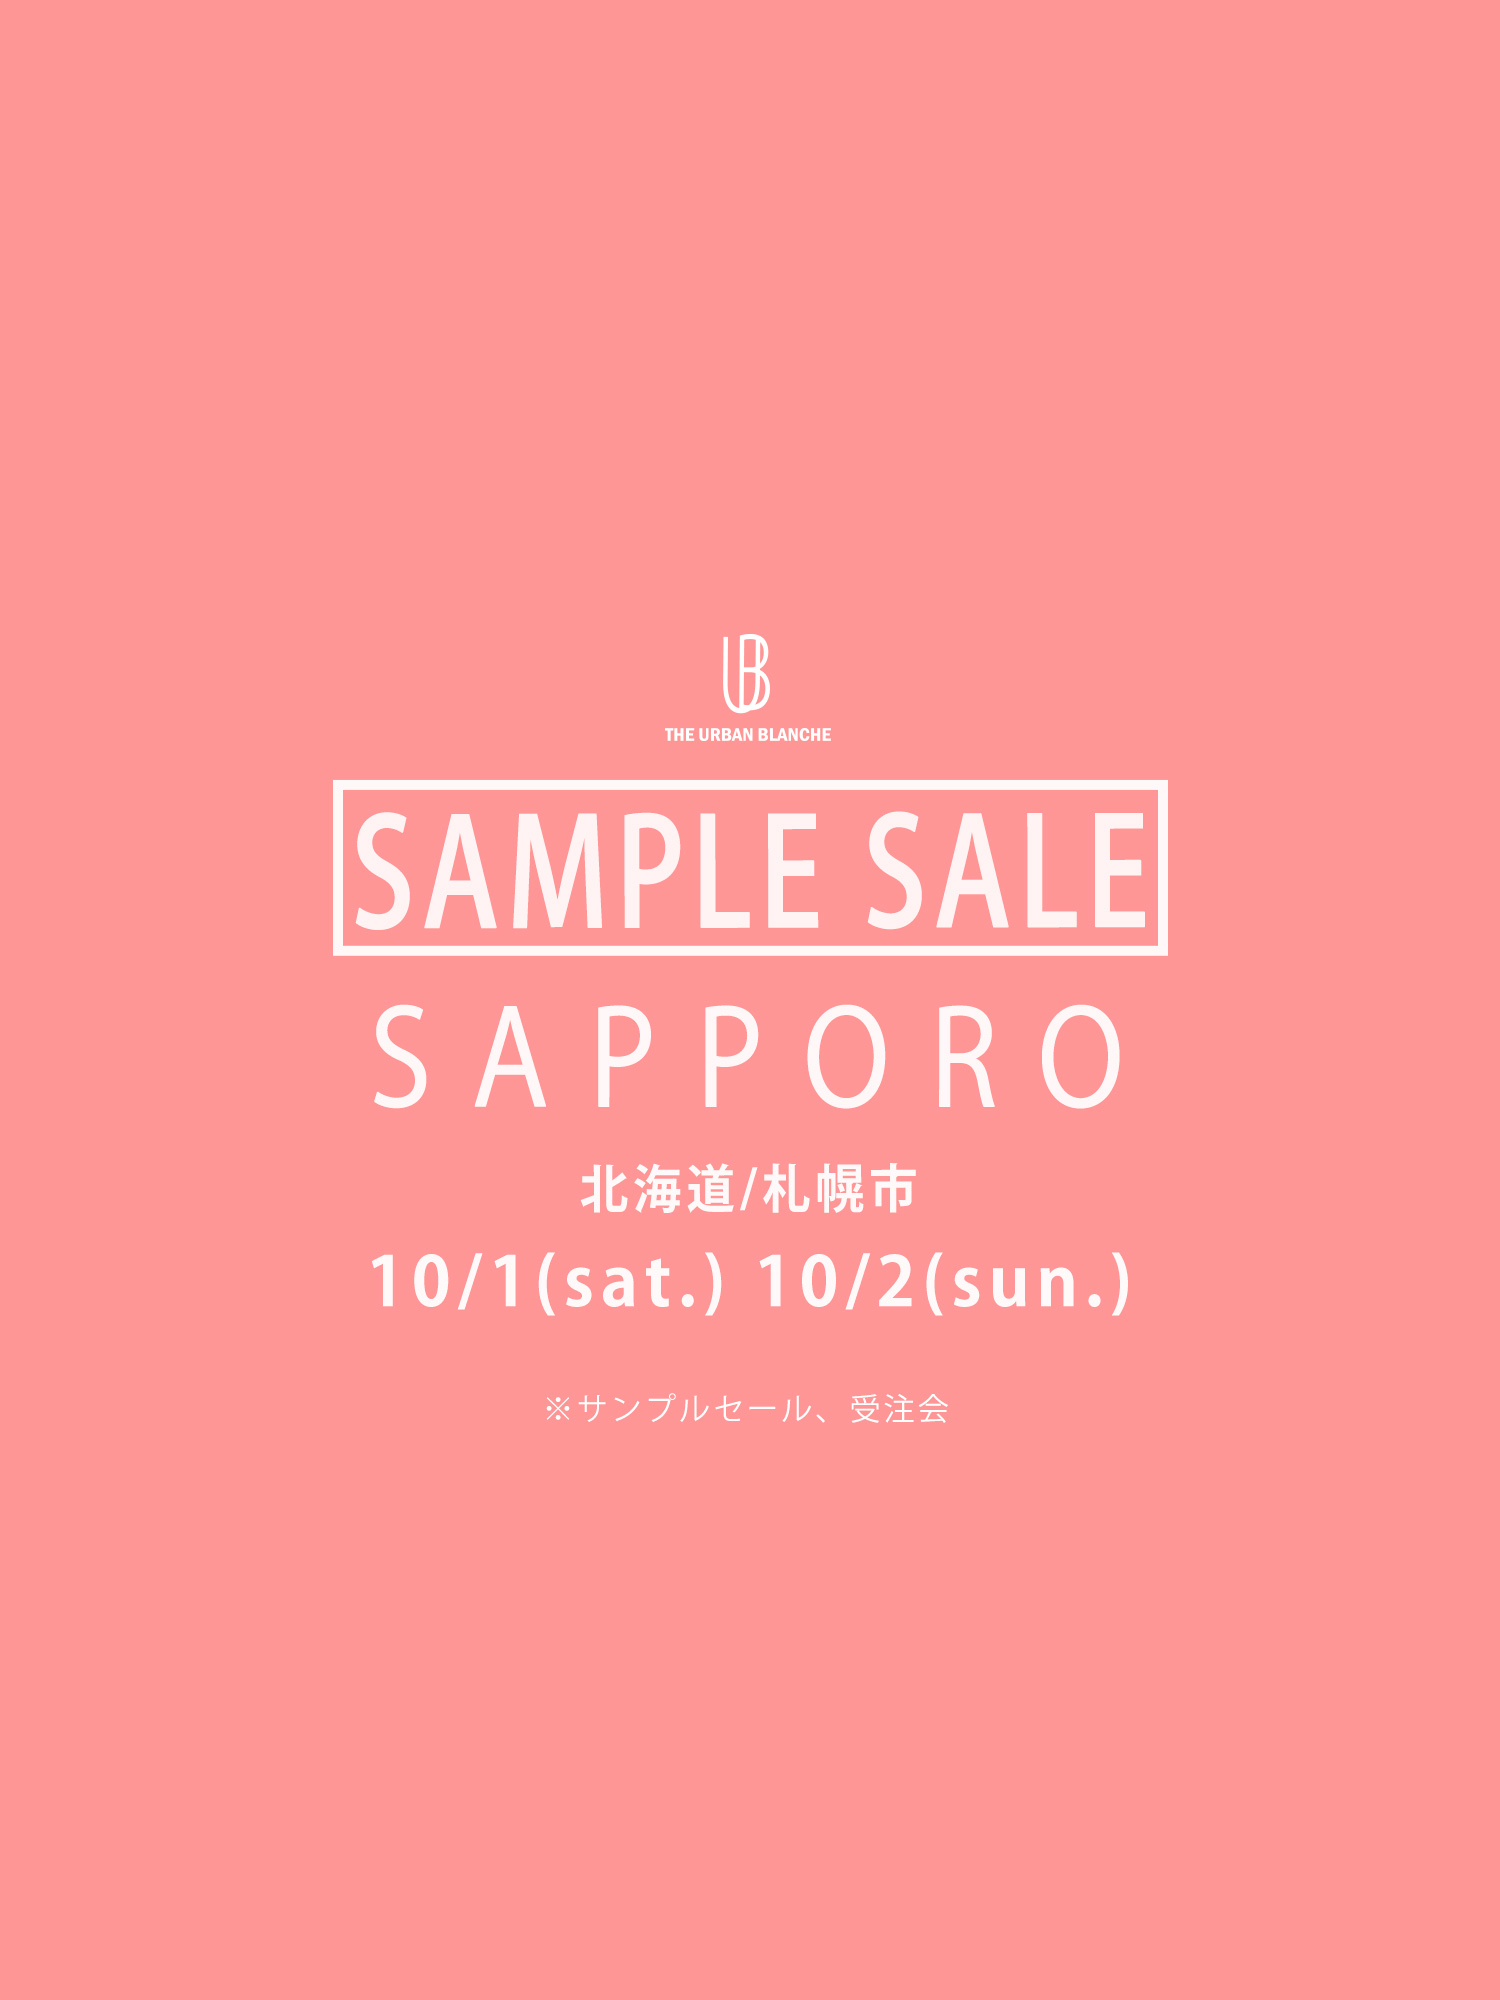 『Hokkaido sample sale & 受注会』のお知らせ